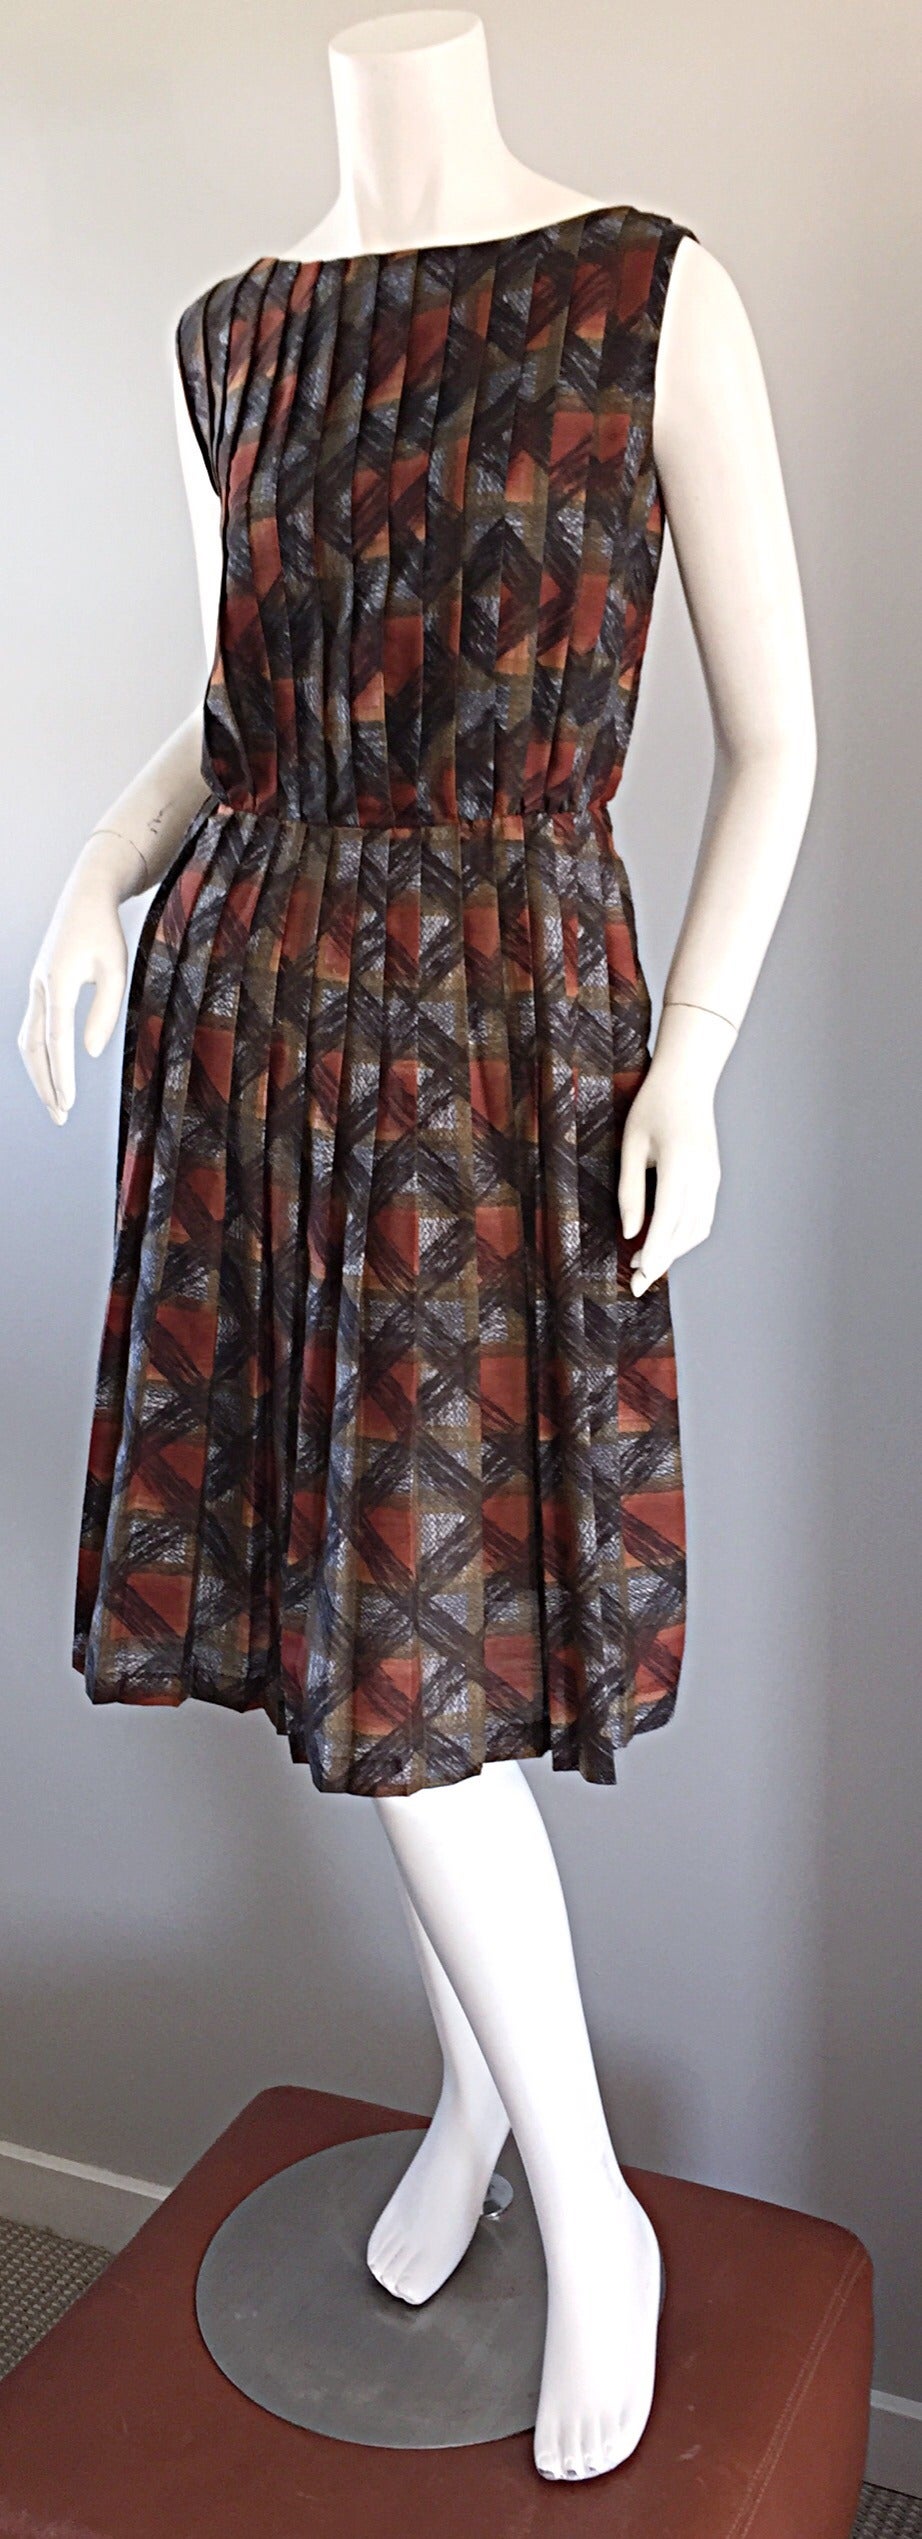 Schickes 'Autumnal' Kleid aus Baumwolle aus den 1950er Jahren! Warme Töne, kariert, mit dreidimensionalem, kontrastierendem, schwarz gezeichnetem Karomuster. Plissee-Mieder und -Rock, das sieht am Körper sensationell aus! Sieht allein oder mit einem